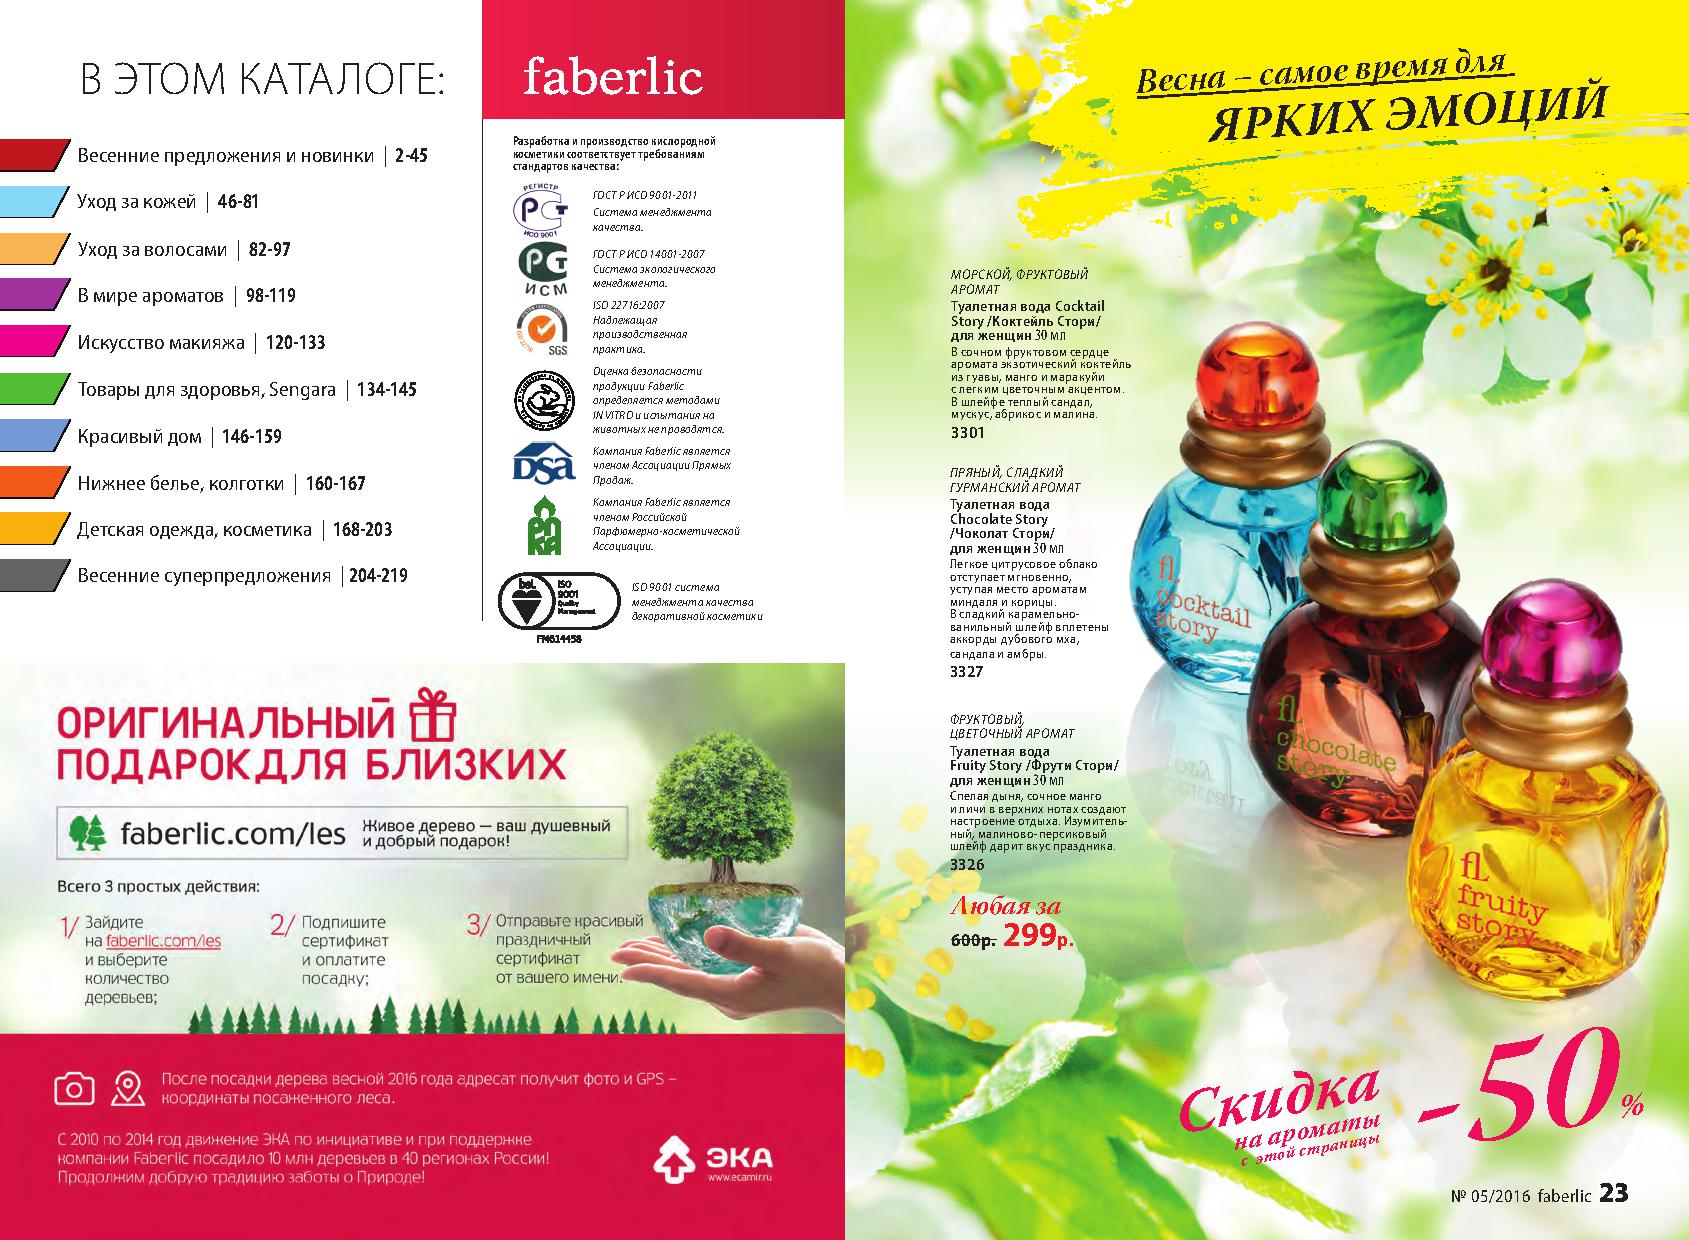  Действующий каталог Faberlic (Фаберлик) декабрь 2014,январь 2015, январь 2015, ферваль2015, март2015,кампания 16/2014, кампания 17/2014, кампания 18/2014, кампания 01/2015, кампания 02/2015, кампания 03/2015, кампания 4/2015